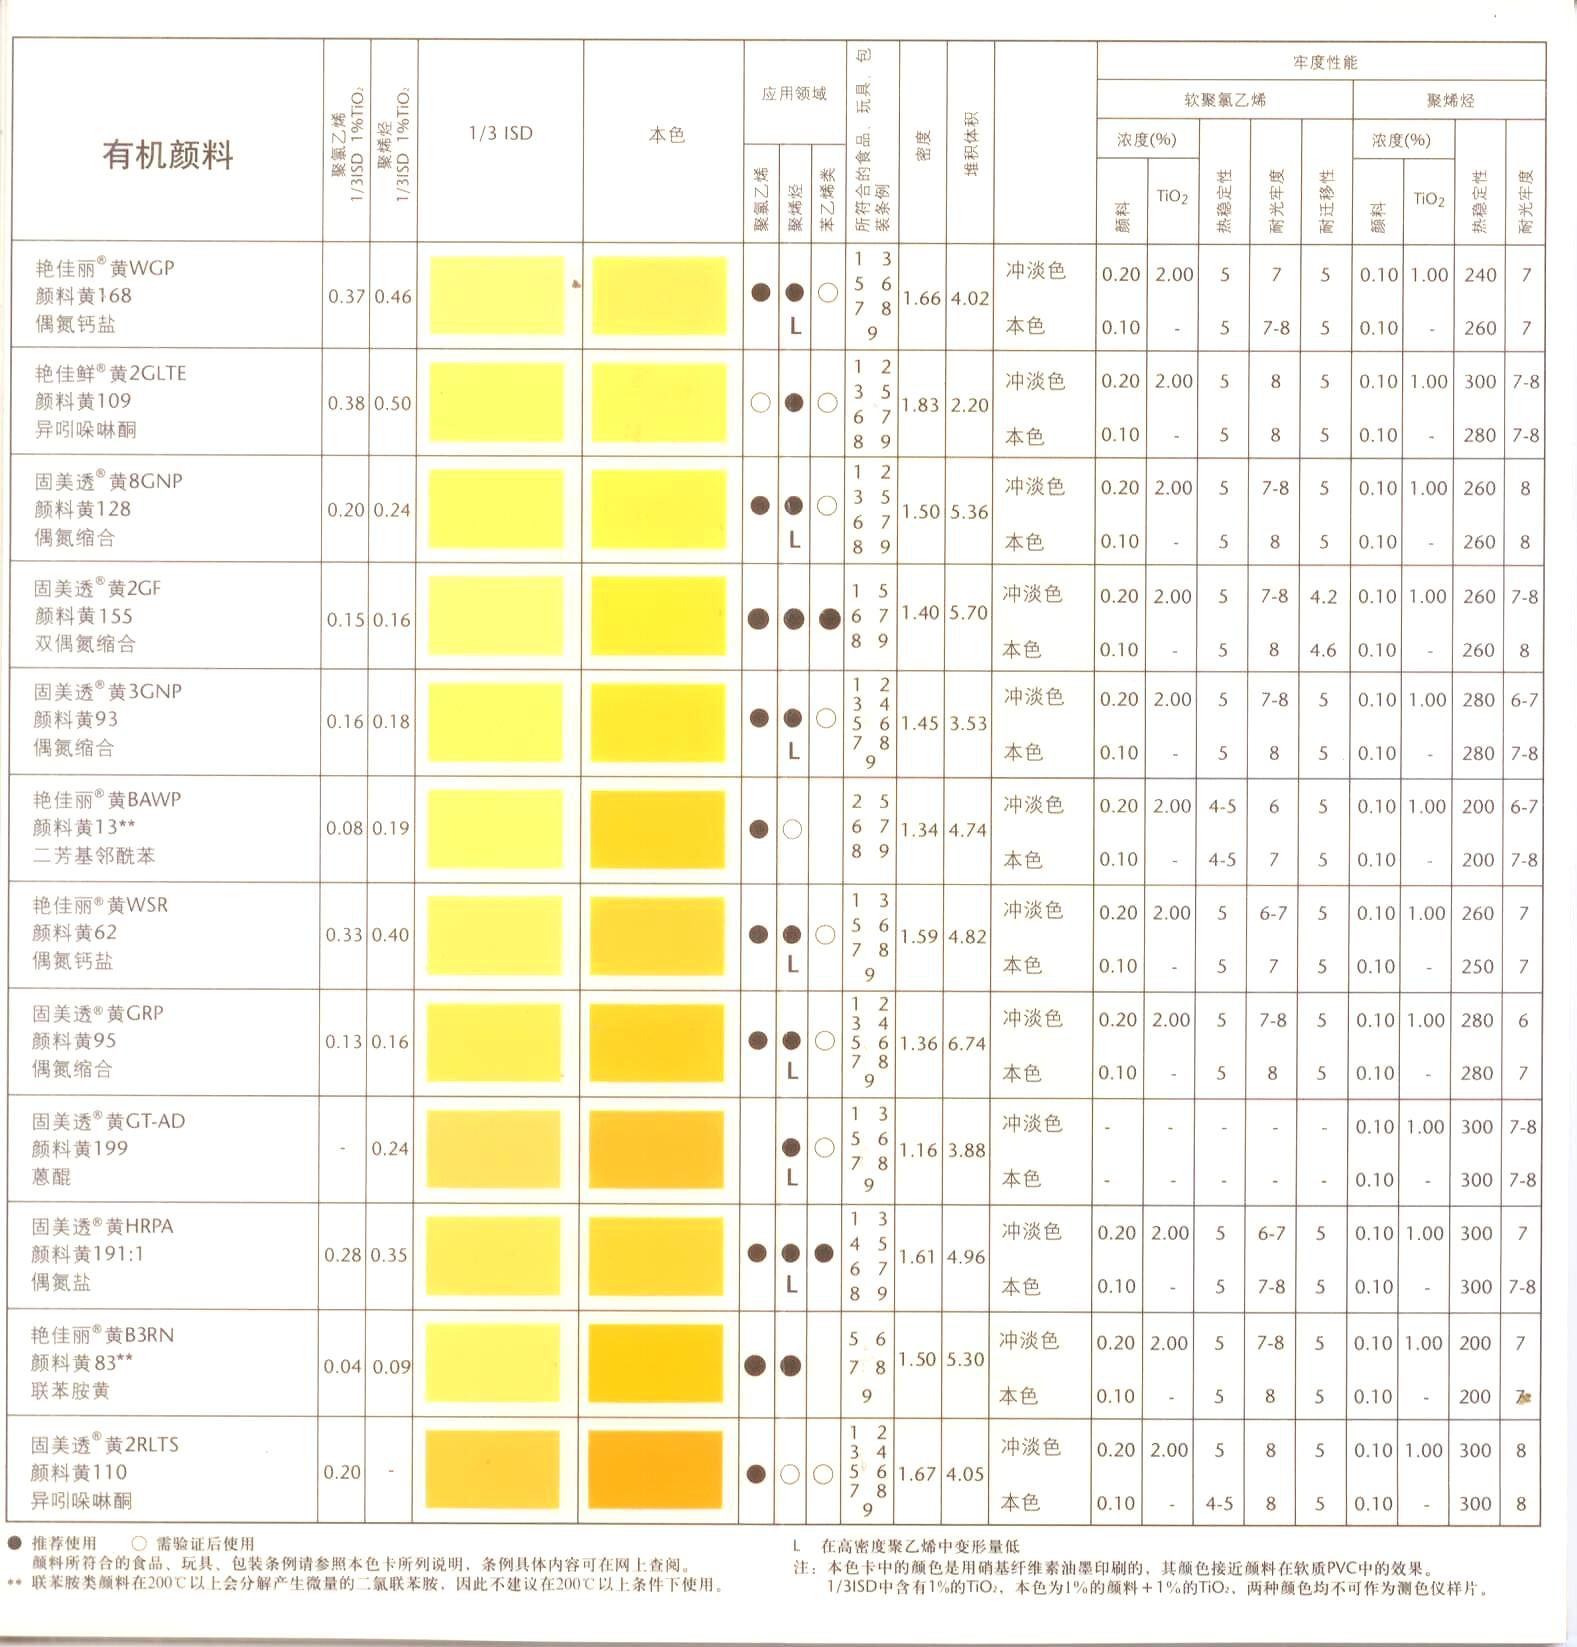 巴斯夫奥丽素染料金黄152/2GLN，巴斯夫进口品牌代理，上海地区经销商